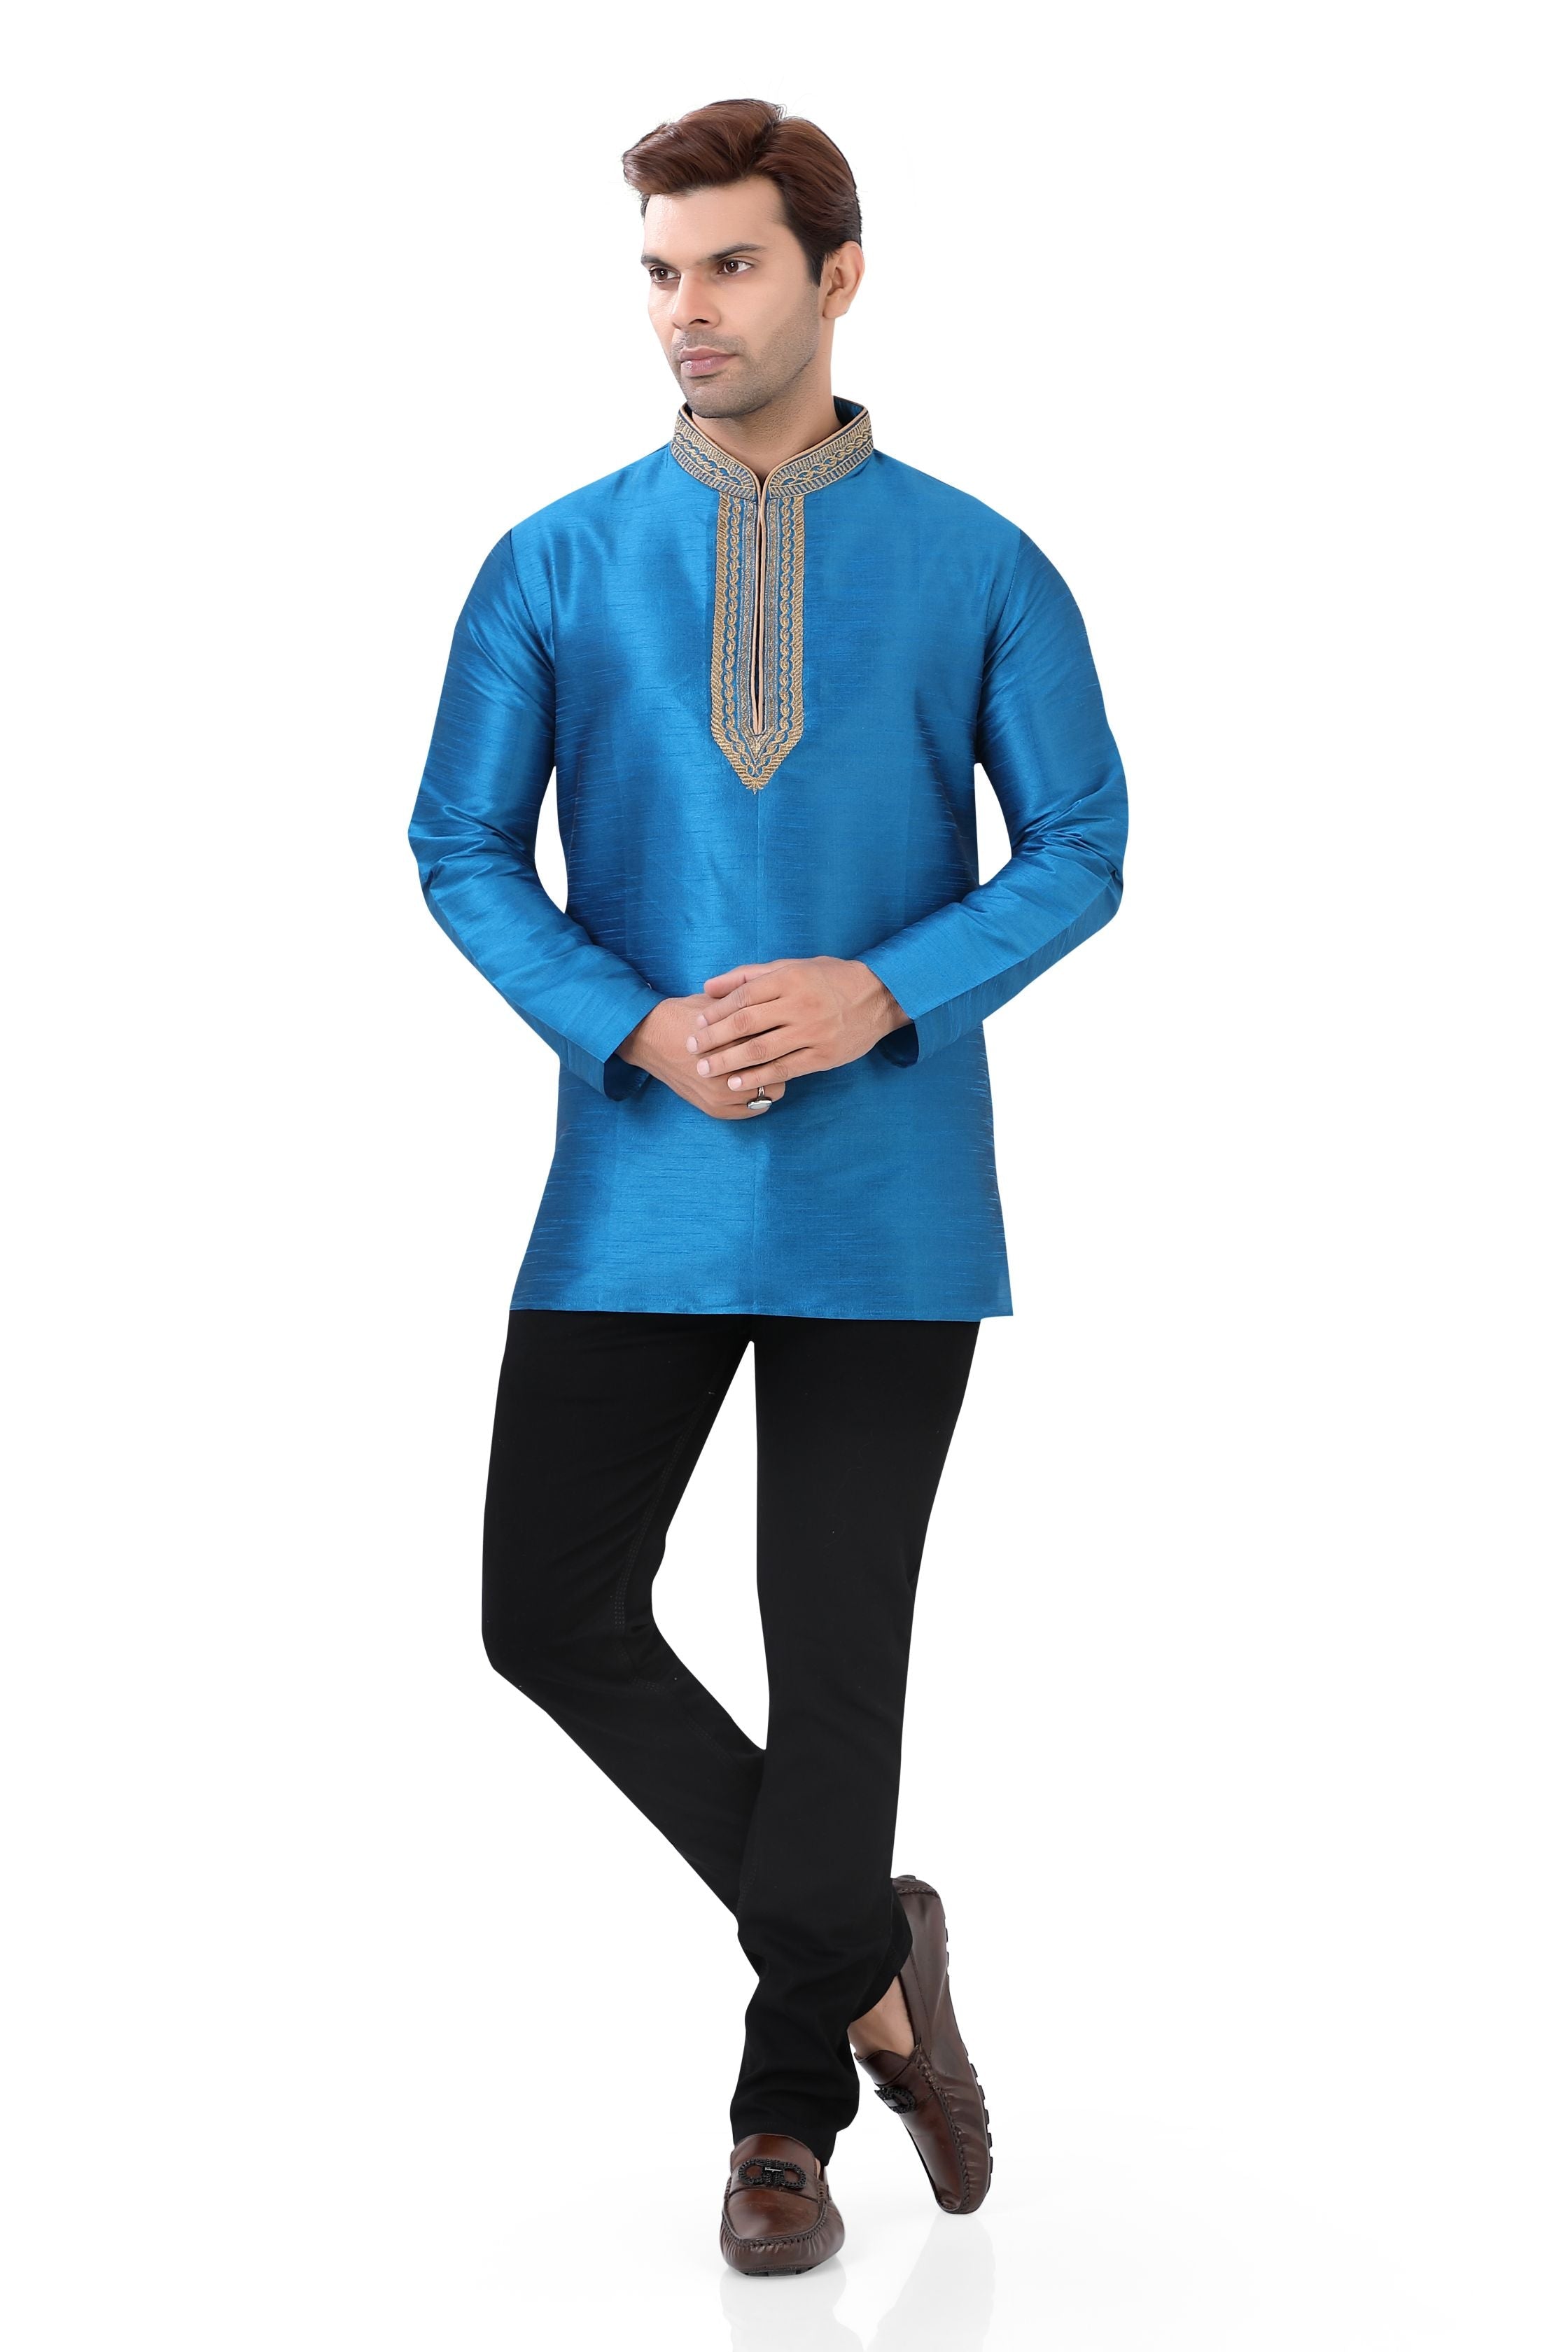 Banarasi Dupion Silk Short Kurta with embroidery in Firozi Blue